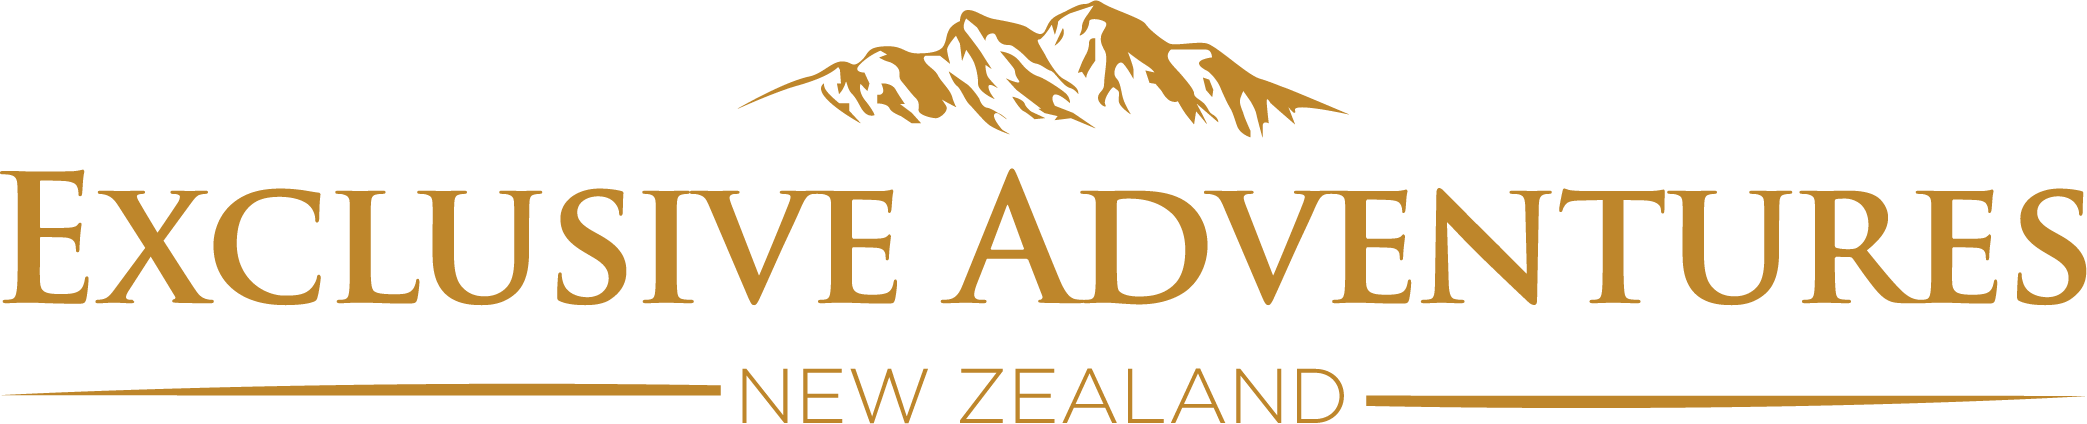 Exclusive Adventures New Zealand